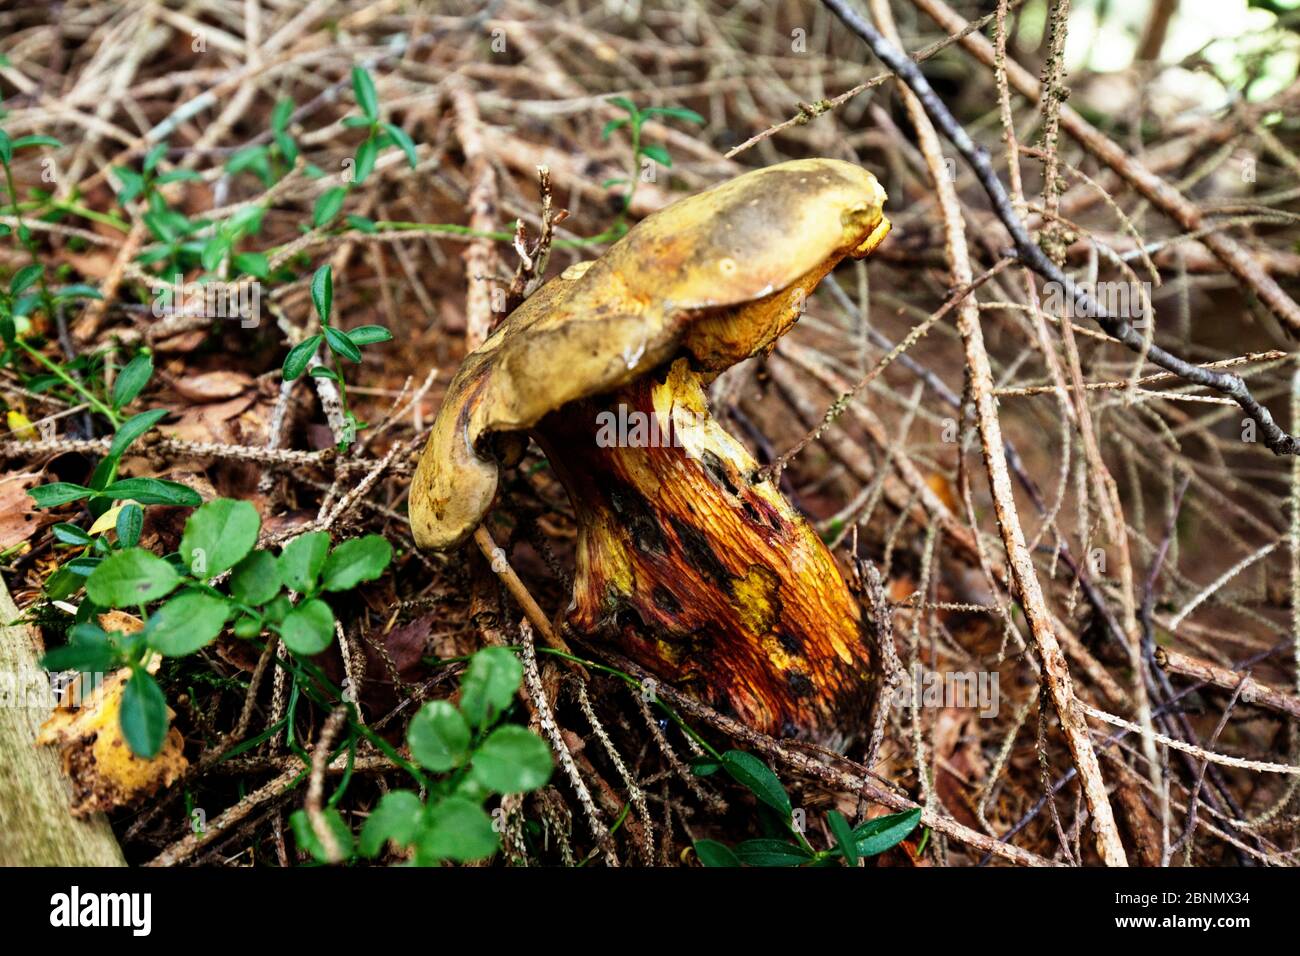 Verrottes Exemplar eines unbekannten Pilzes mit einem auffälligen Maschenmuster am Stiel Stockfoto